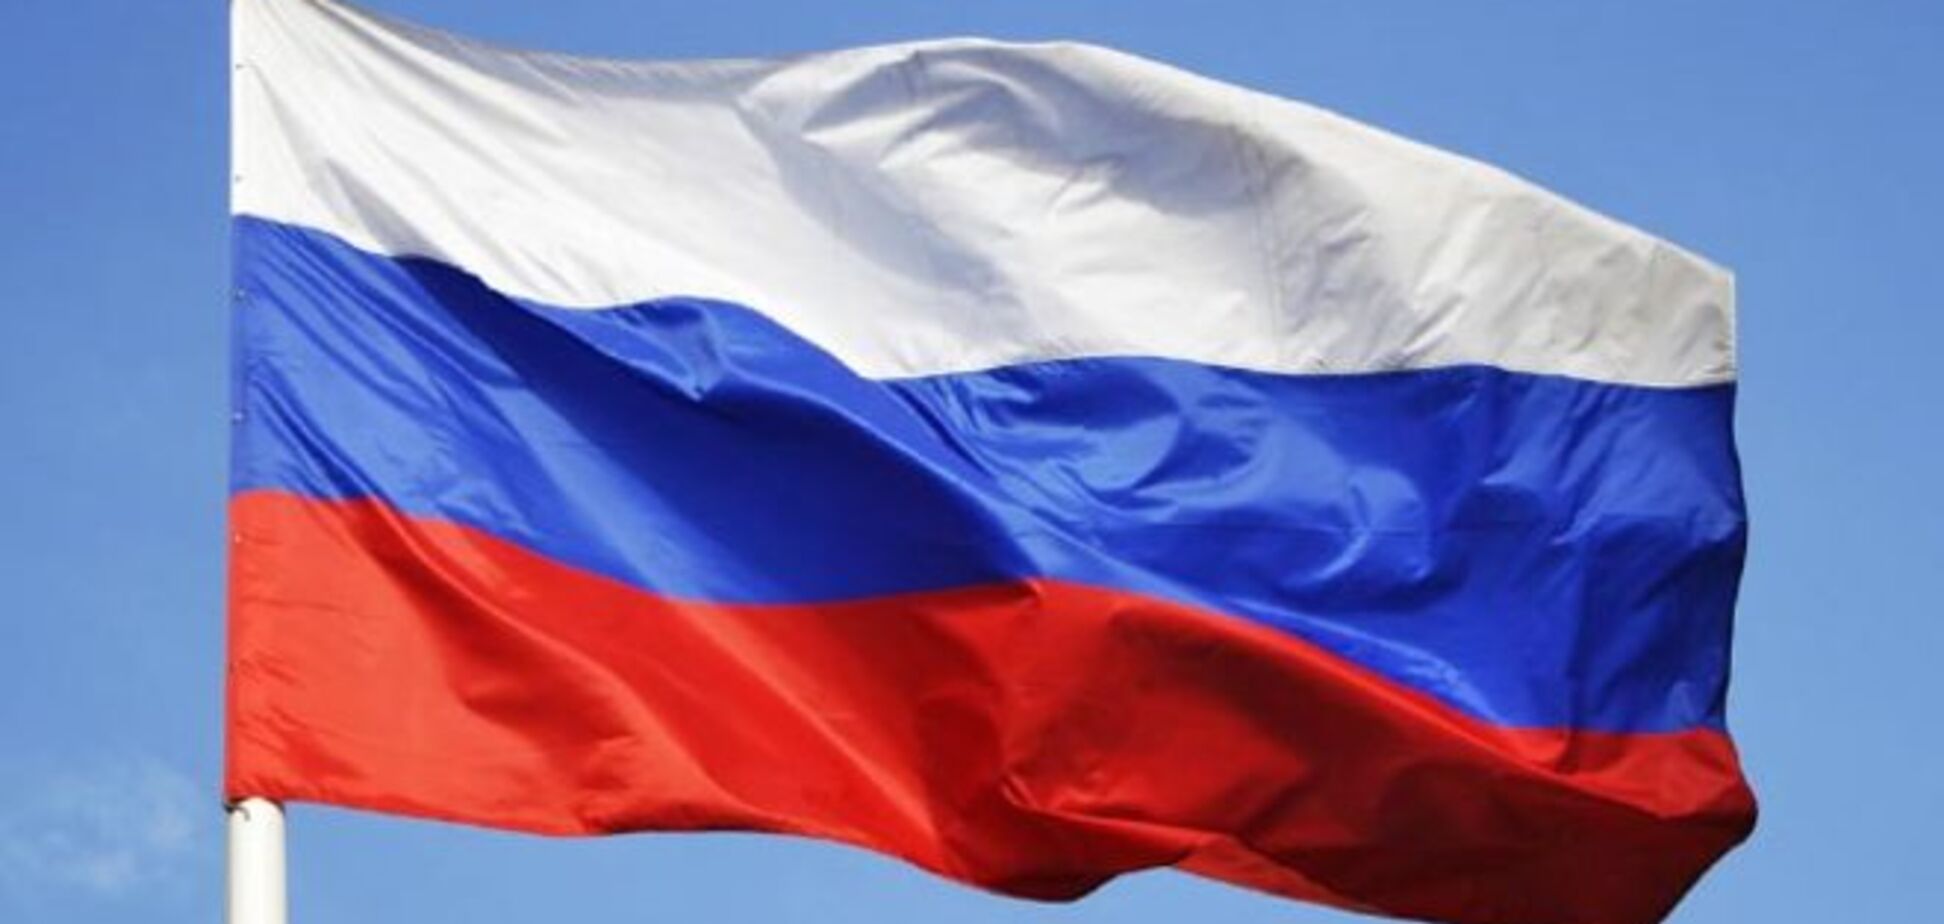 Мэр Горловки под дулом пистолетов издал распоряжение: вывесить на зданиях флаг России